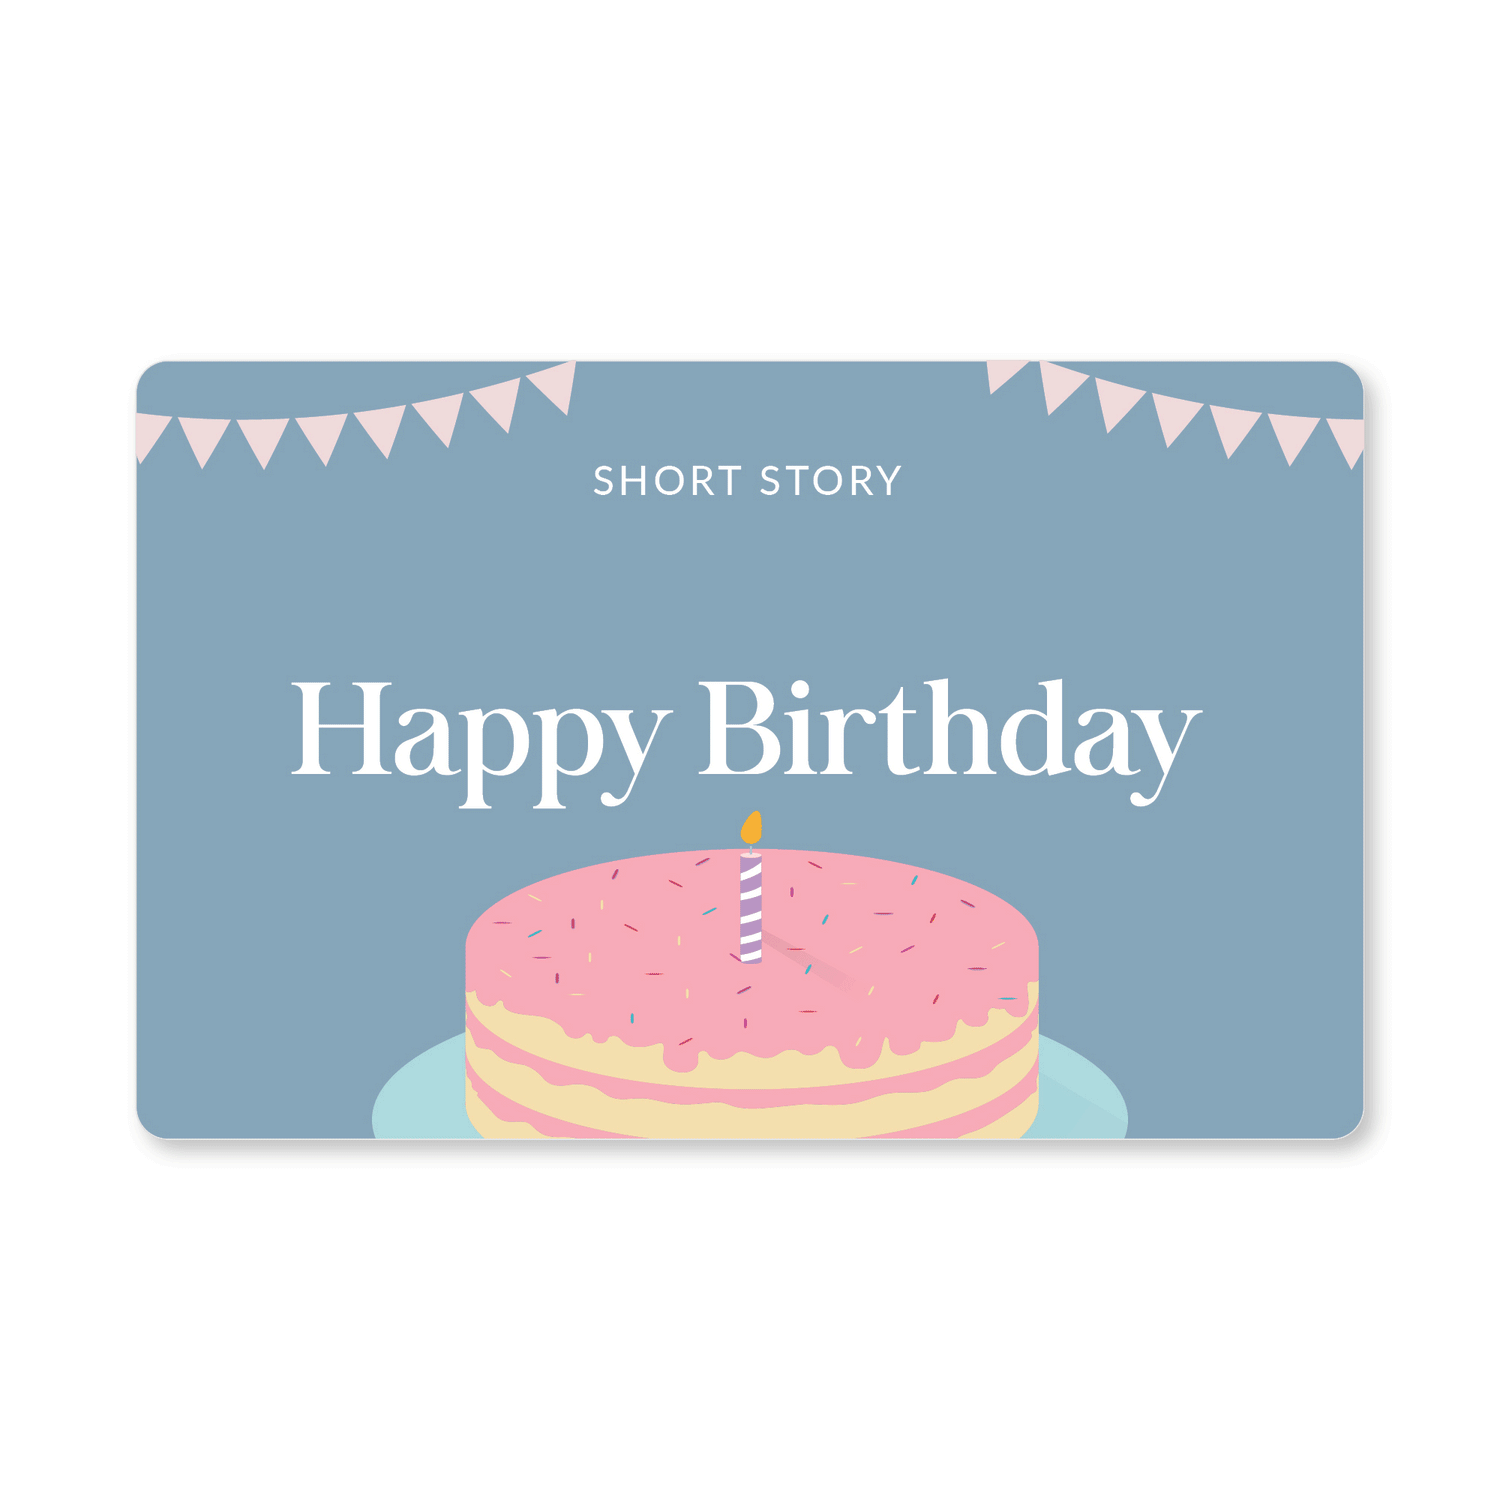 Short Story Digital Gift Card Happy Birthday